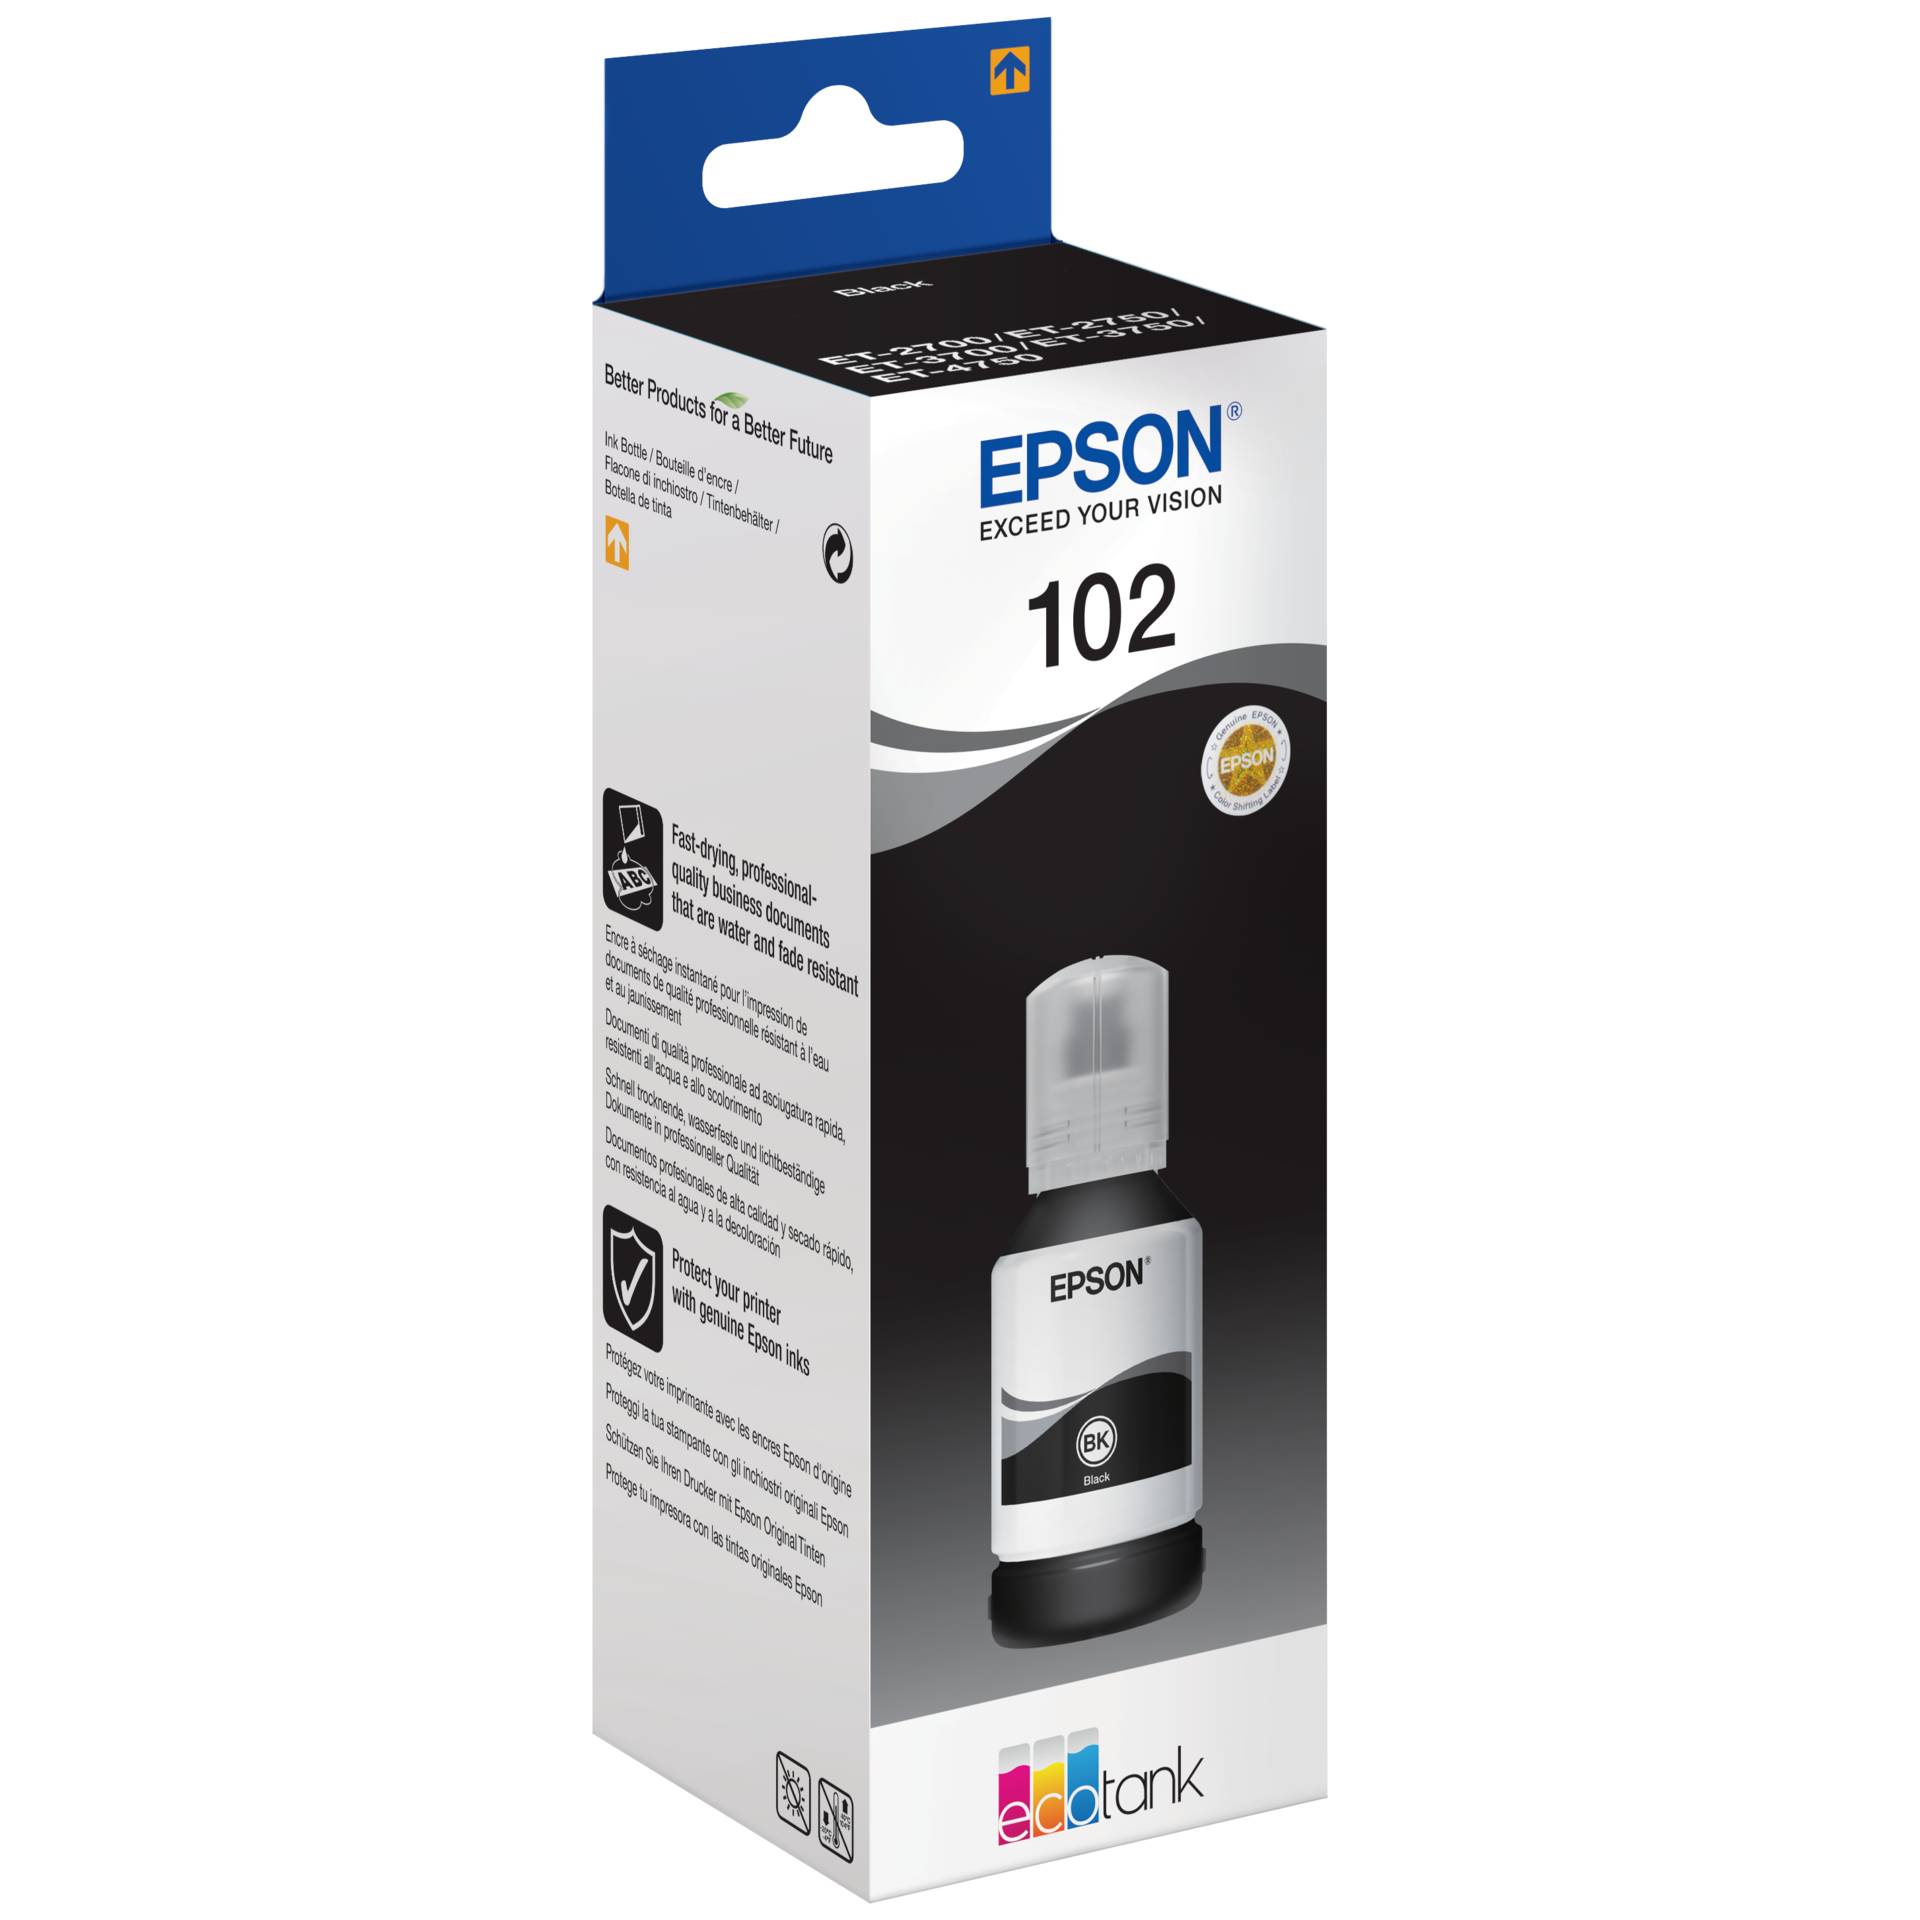 Epson Tinte 102 schwarz 